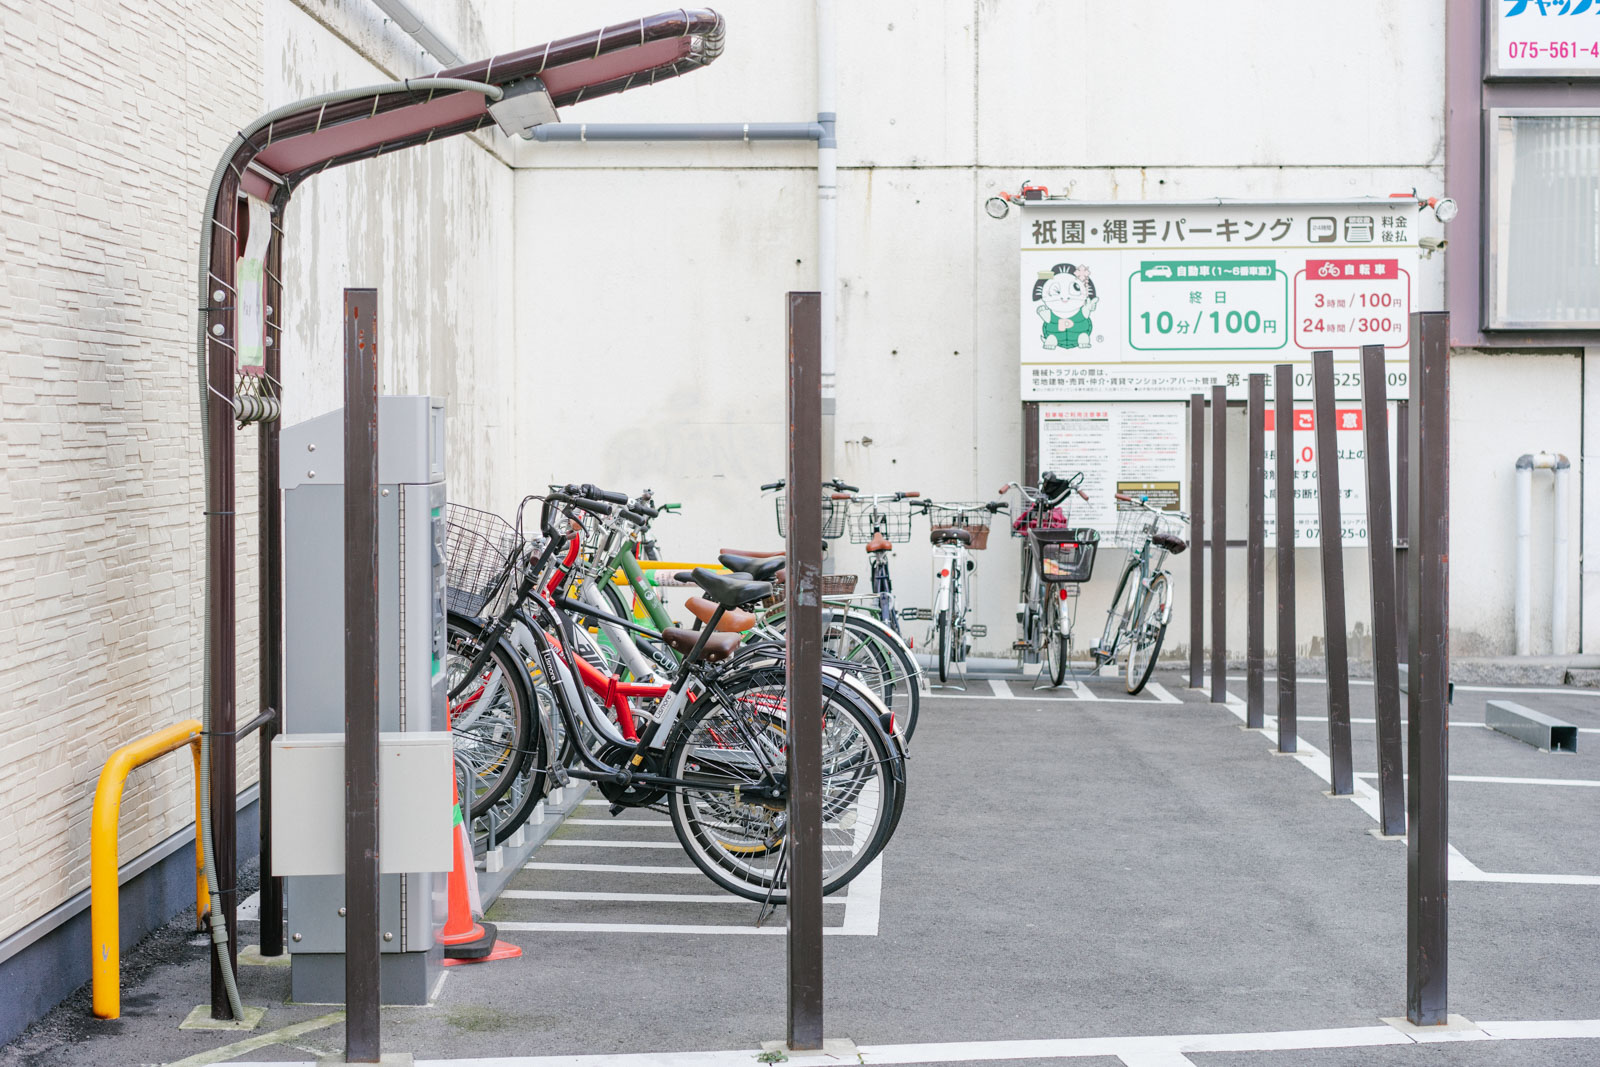 摆放整齐有序的自行车停车场。